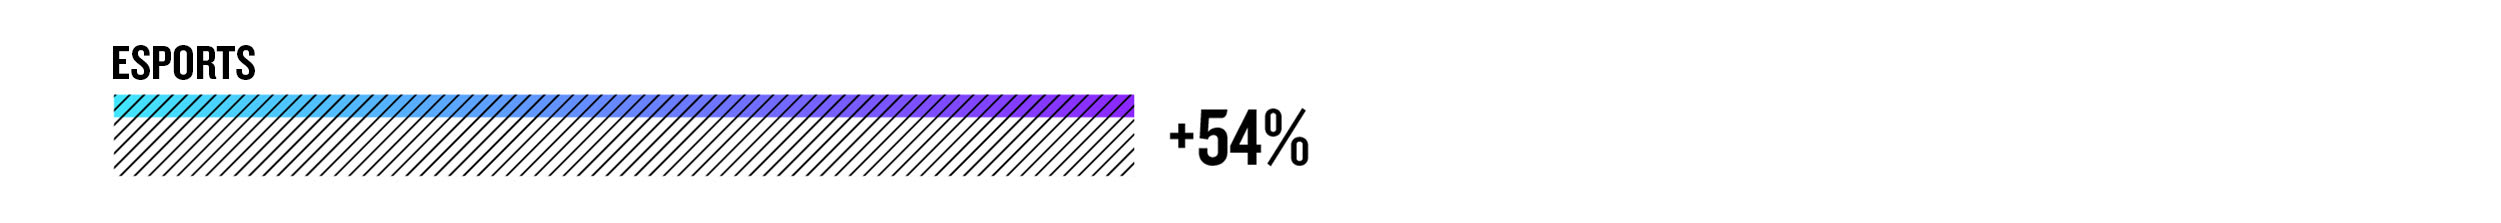 eSport +54%